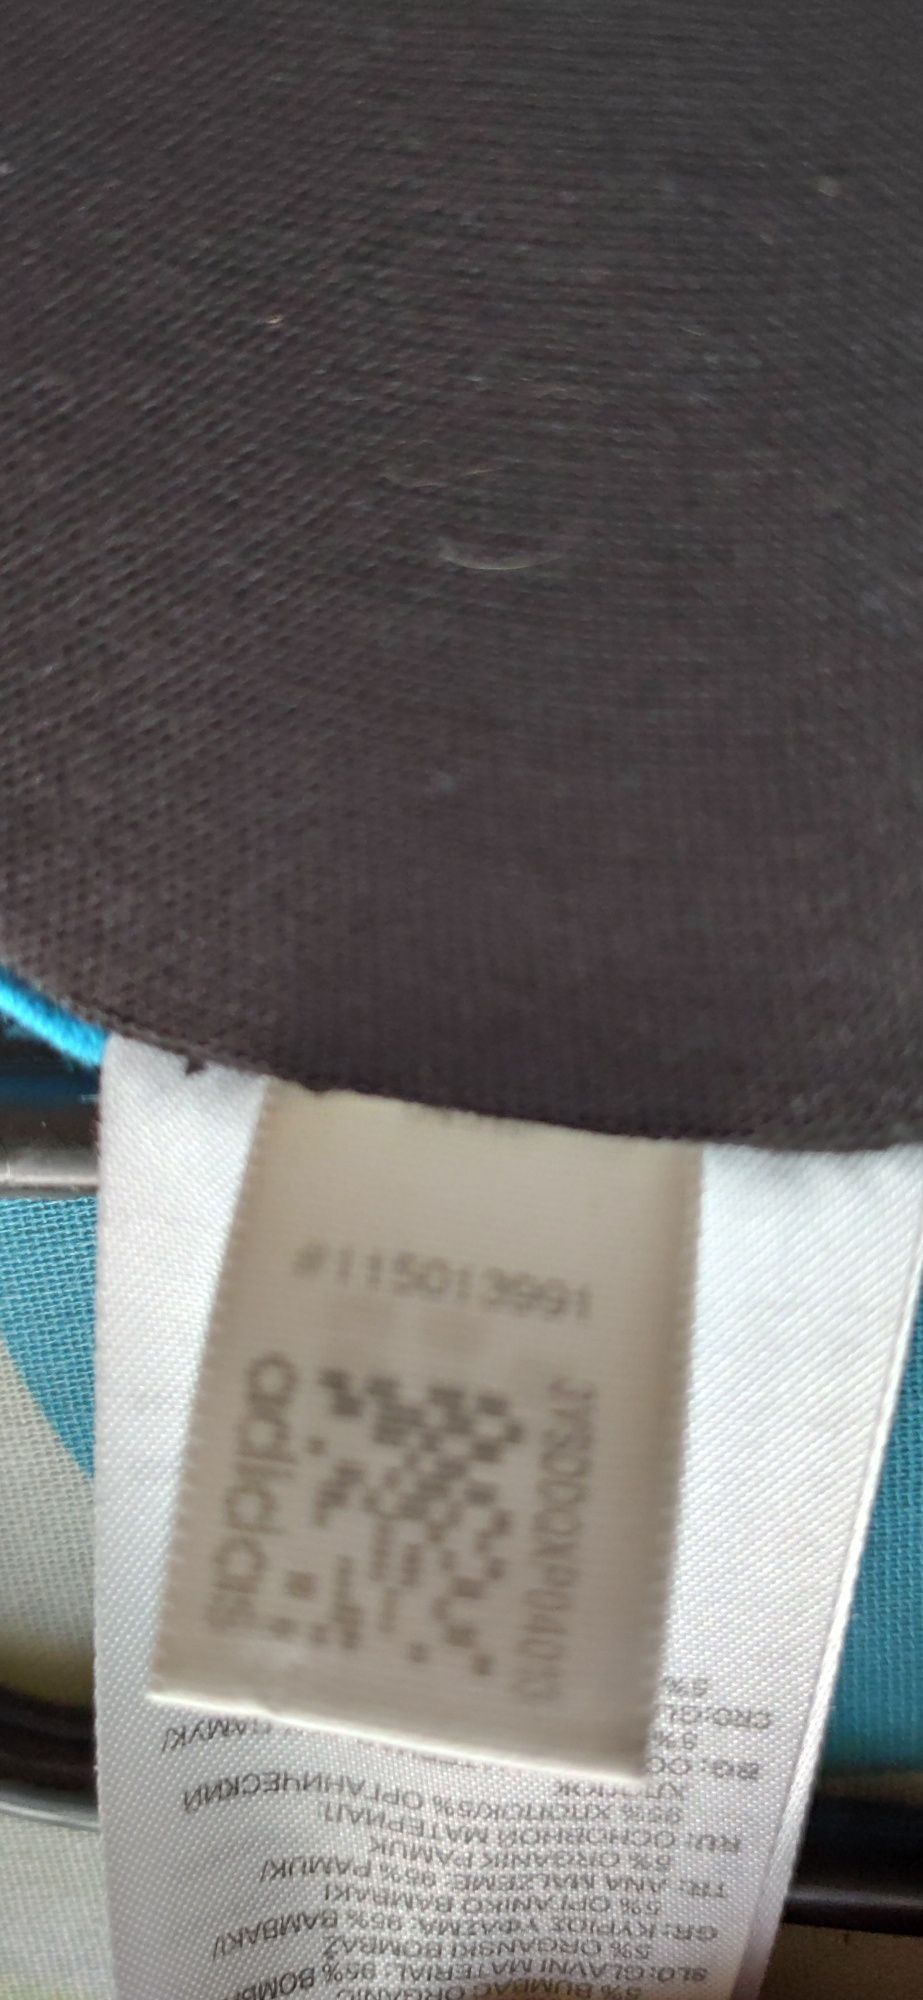 Koszulka t-shirt męski firmy Adidas czarny z logiem napisów adidas